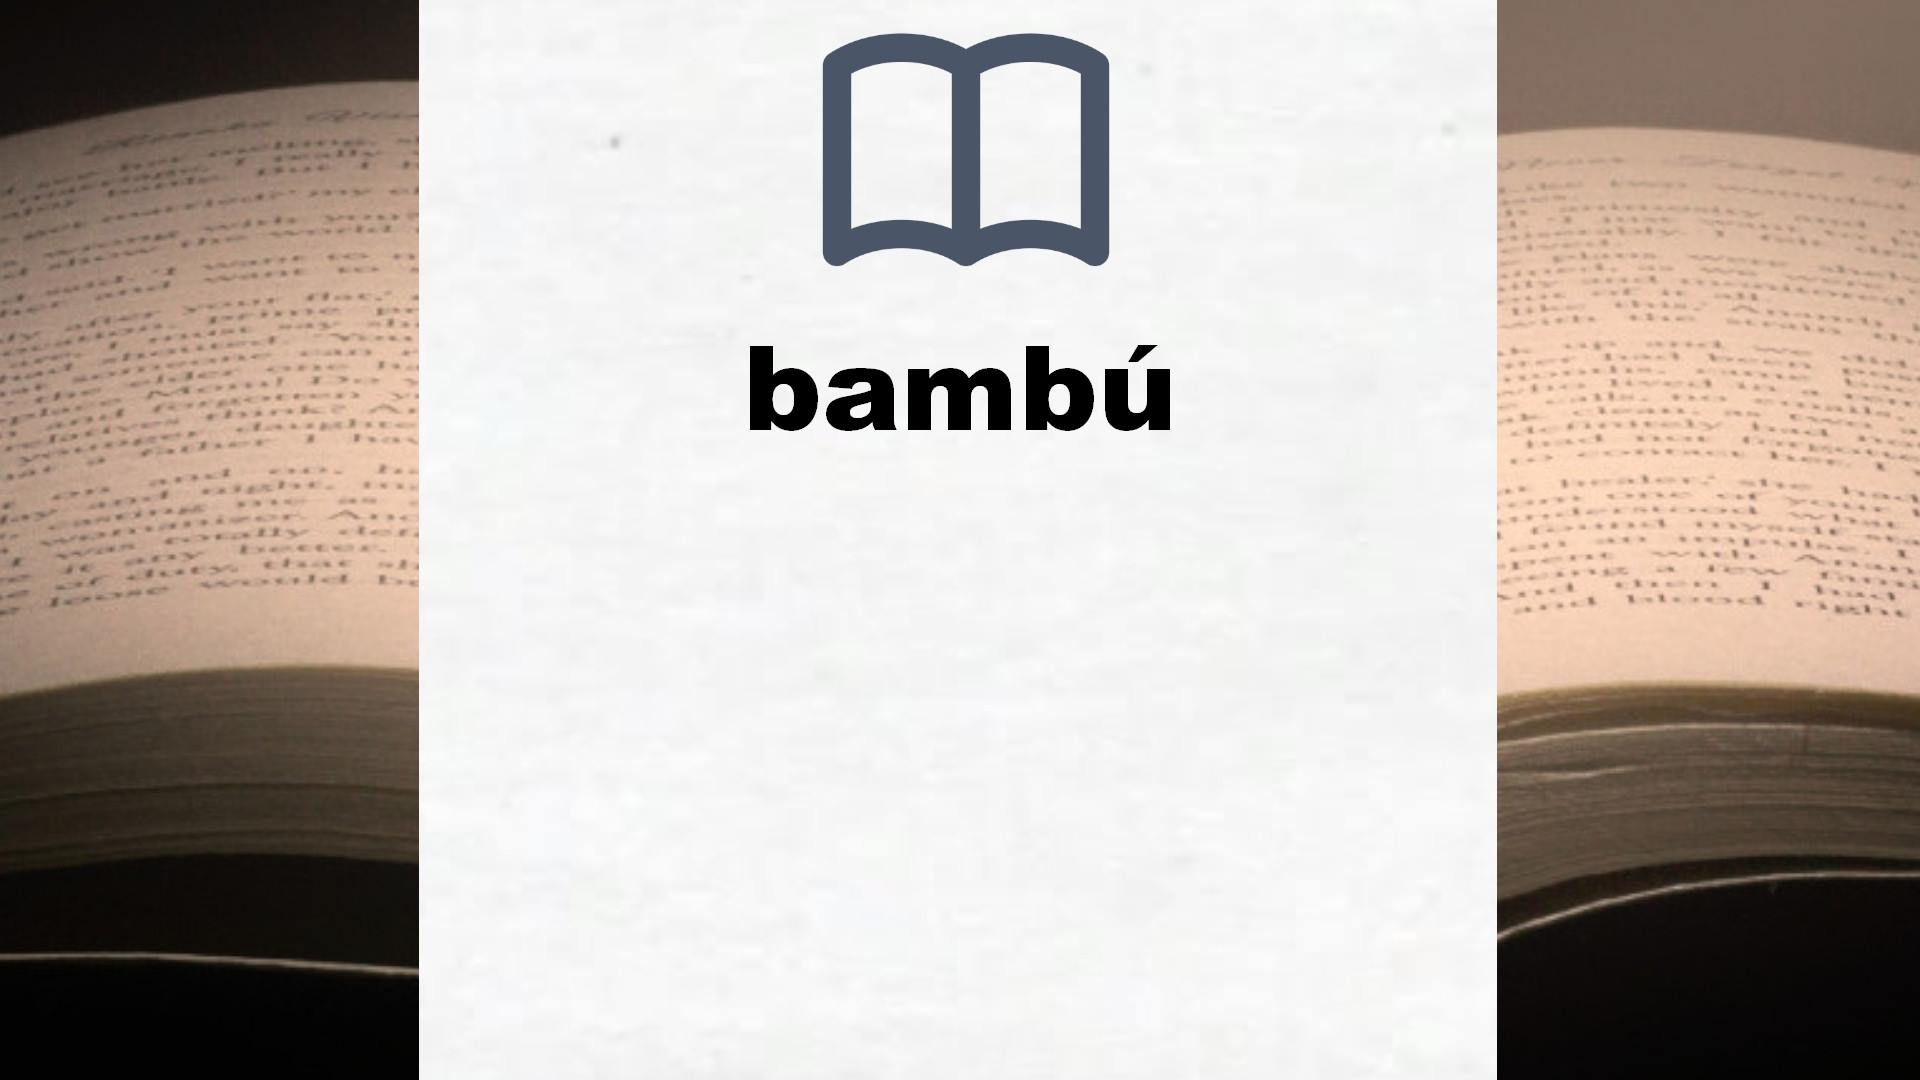 Libros sobre bambú